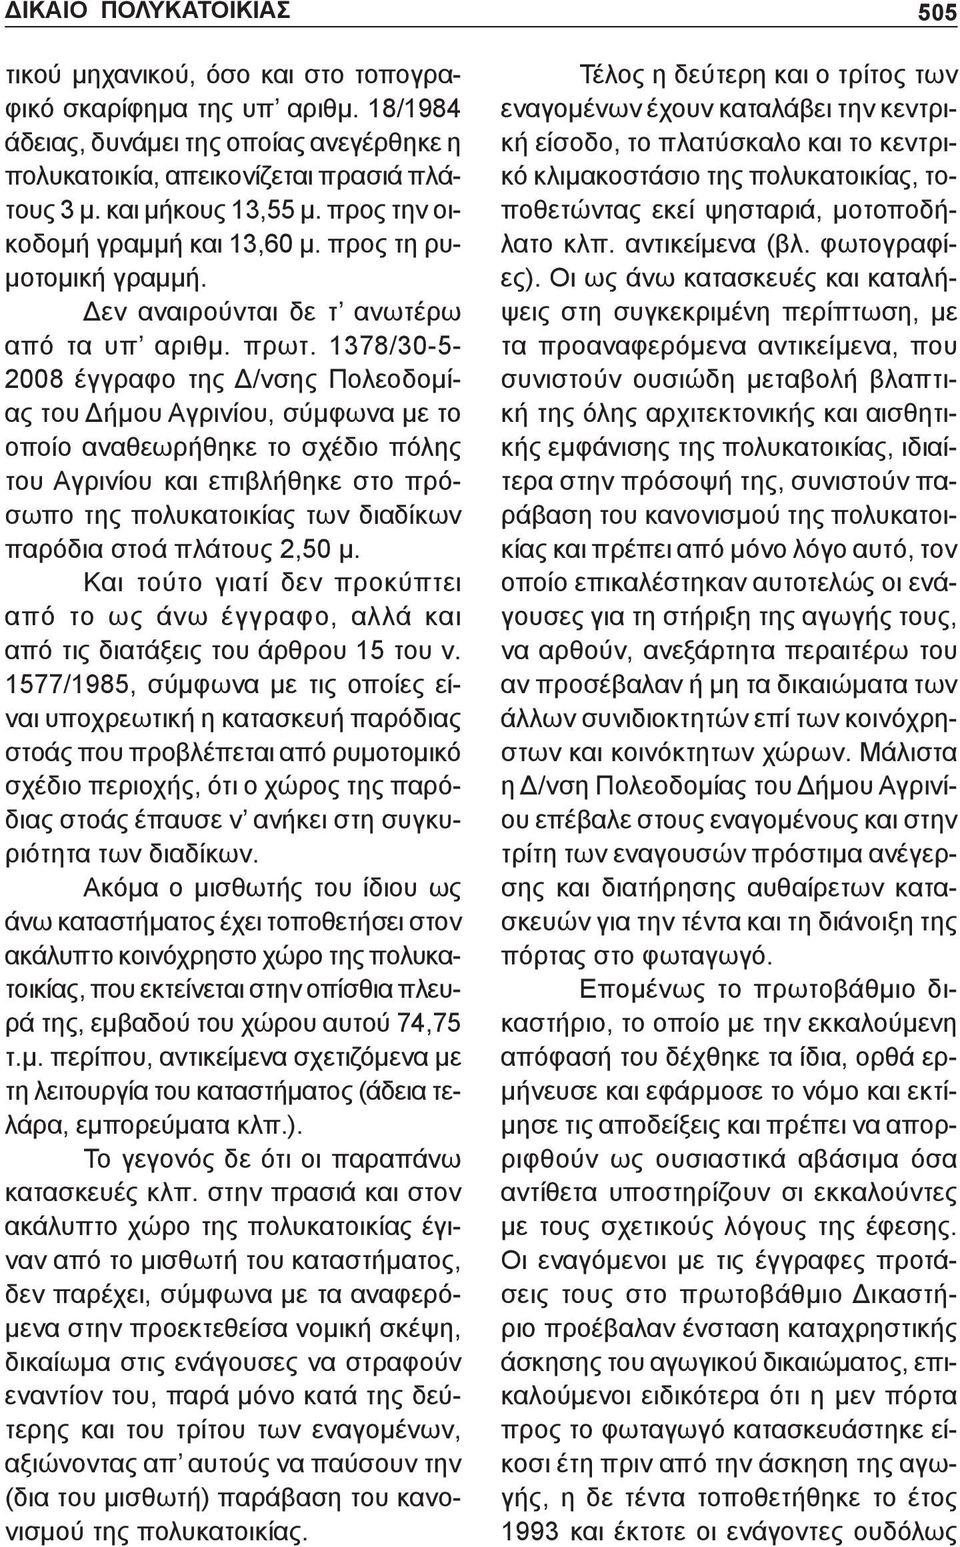 1378/30-5- 2008 έγγραφο της Δ/νσης Πολεοδομίας του Δήμου Αγρινίου, σύμφωνα με το οποίο αναθεωρήθηκε το σχέδιο πόλης του Αγρινίου και επιβλήθηκε στο πρόσωπο της πολυκατοικίας των διαδίκων παρόδια στοά